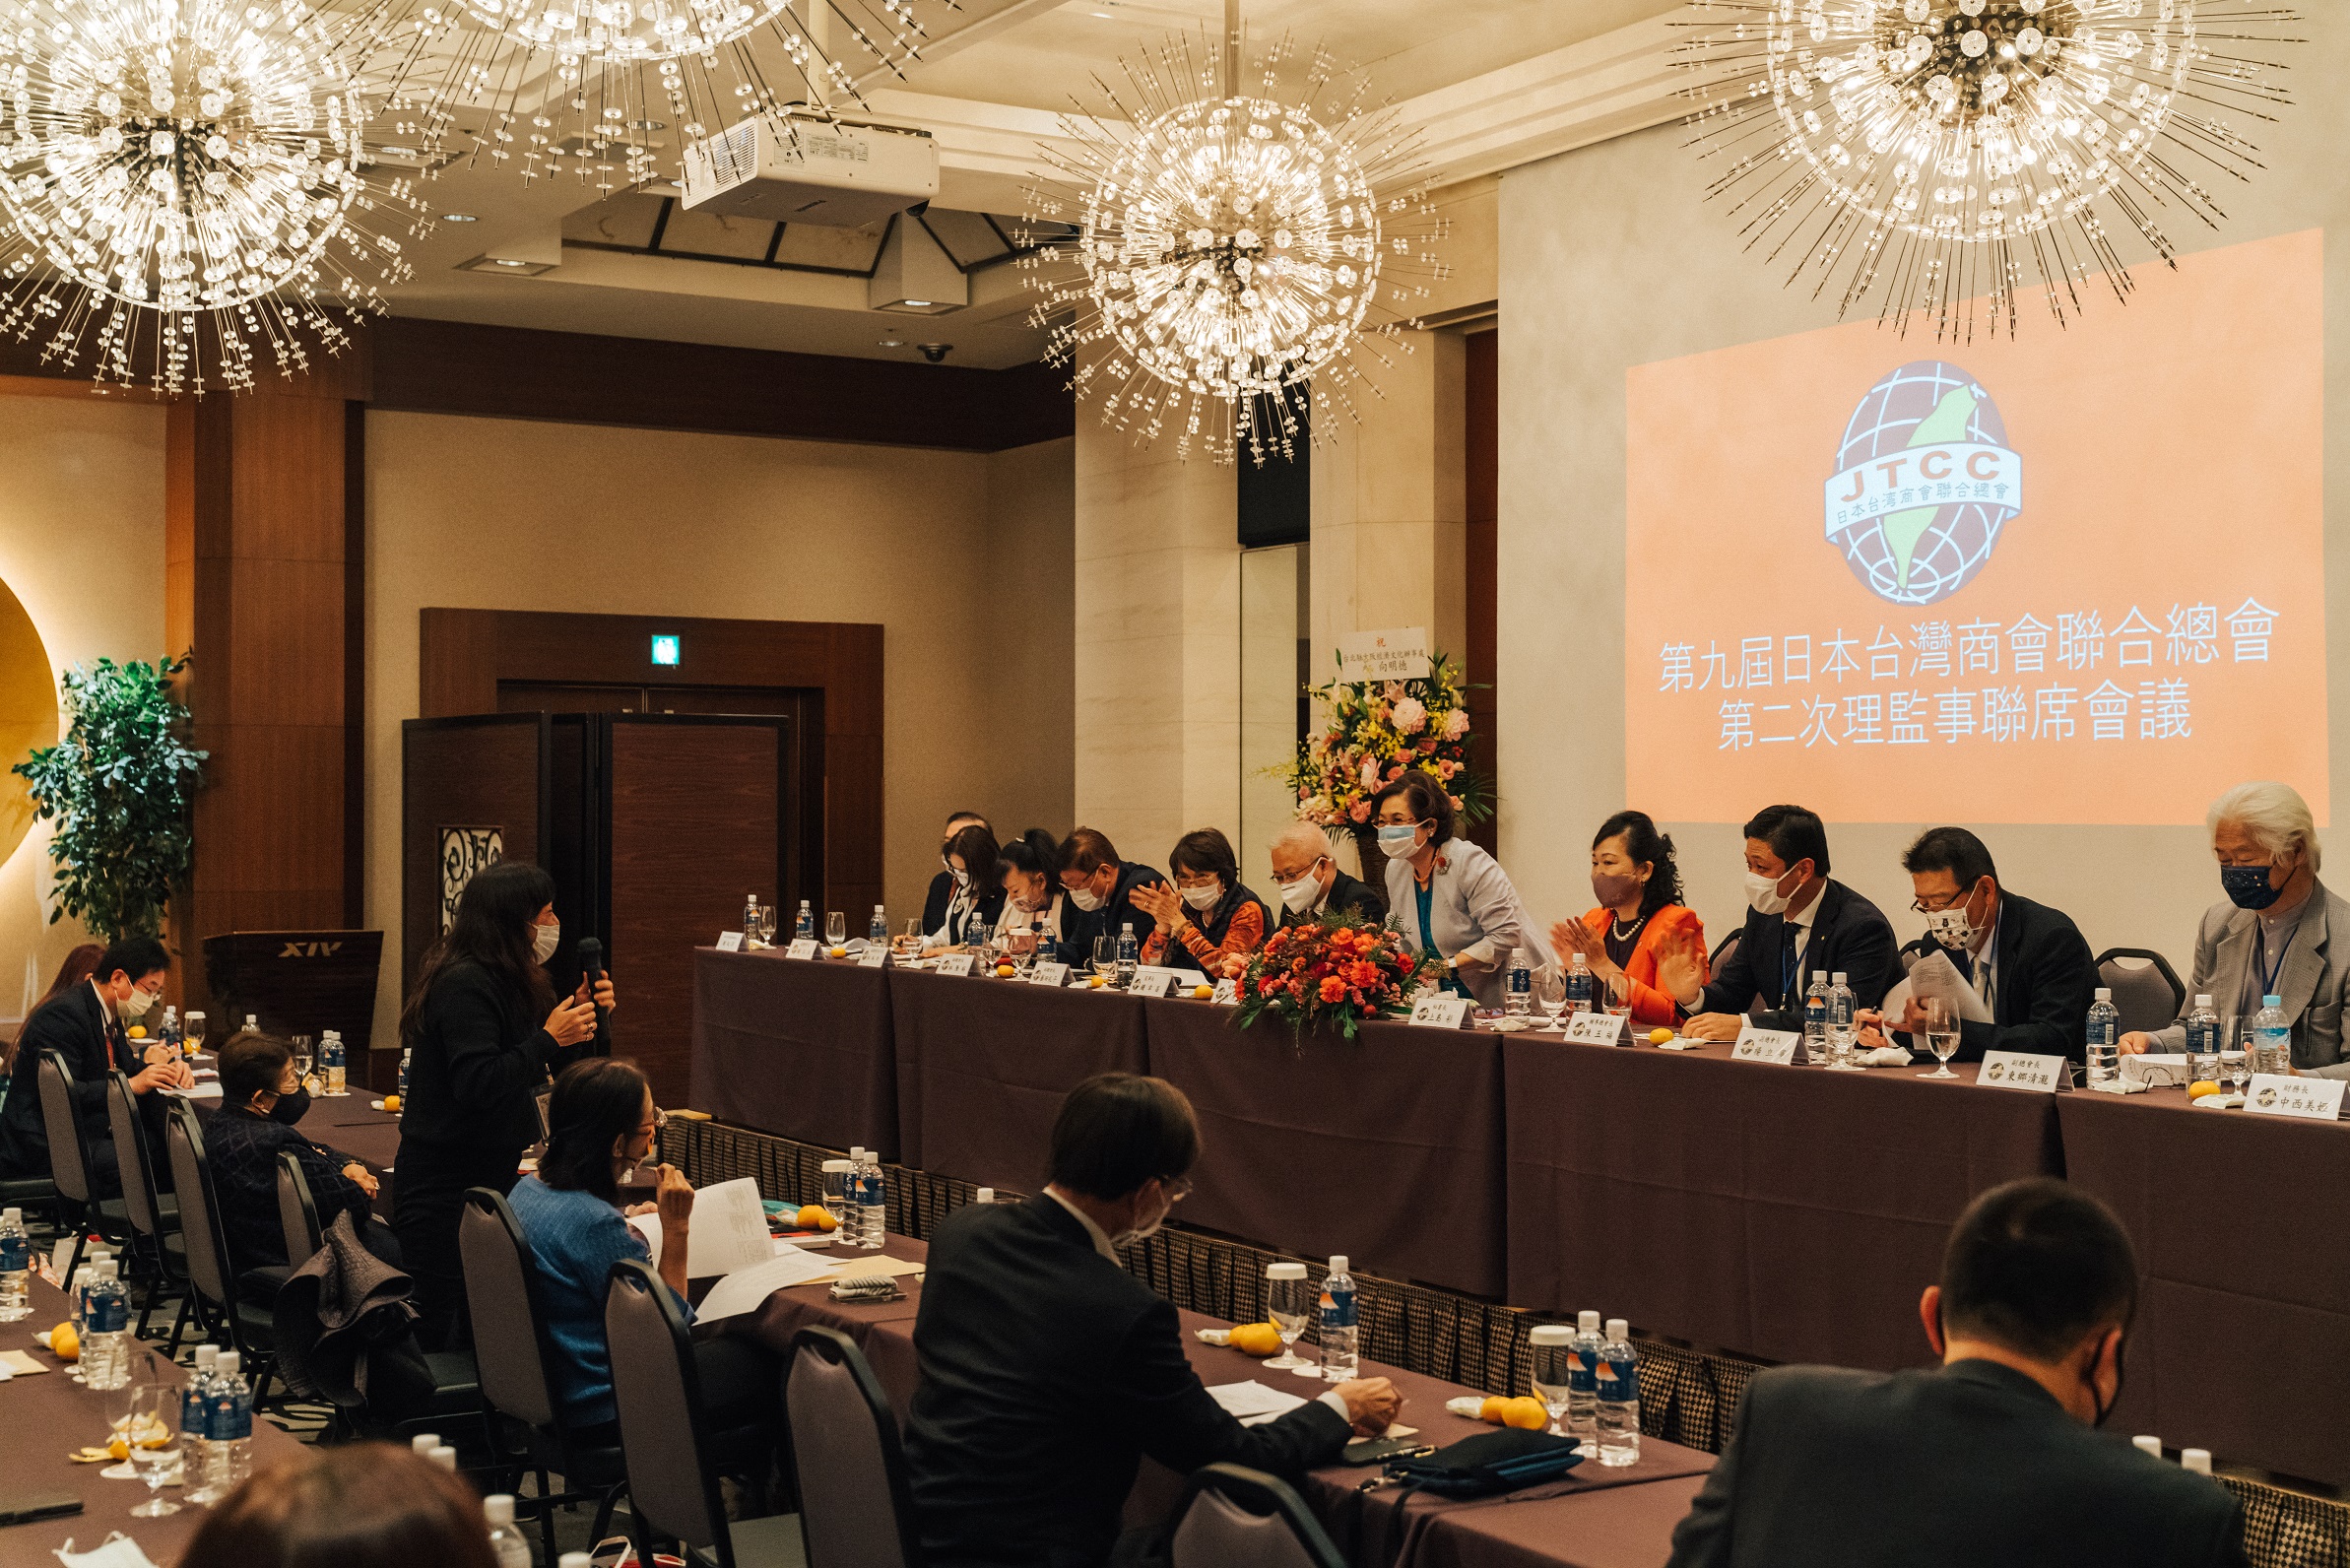 日總在京都舉辦第九屆第二次理監事聯席會議及懇親晚宴